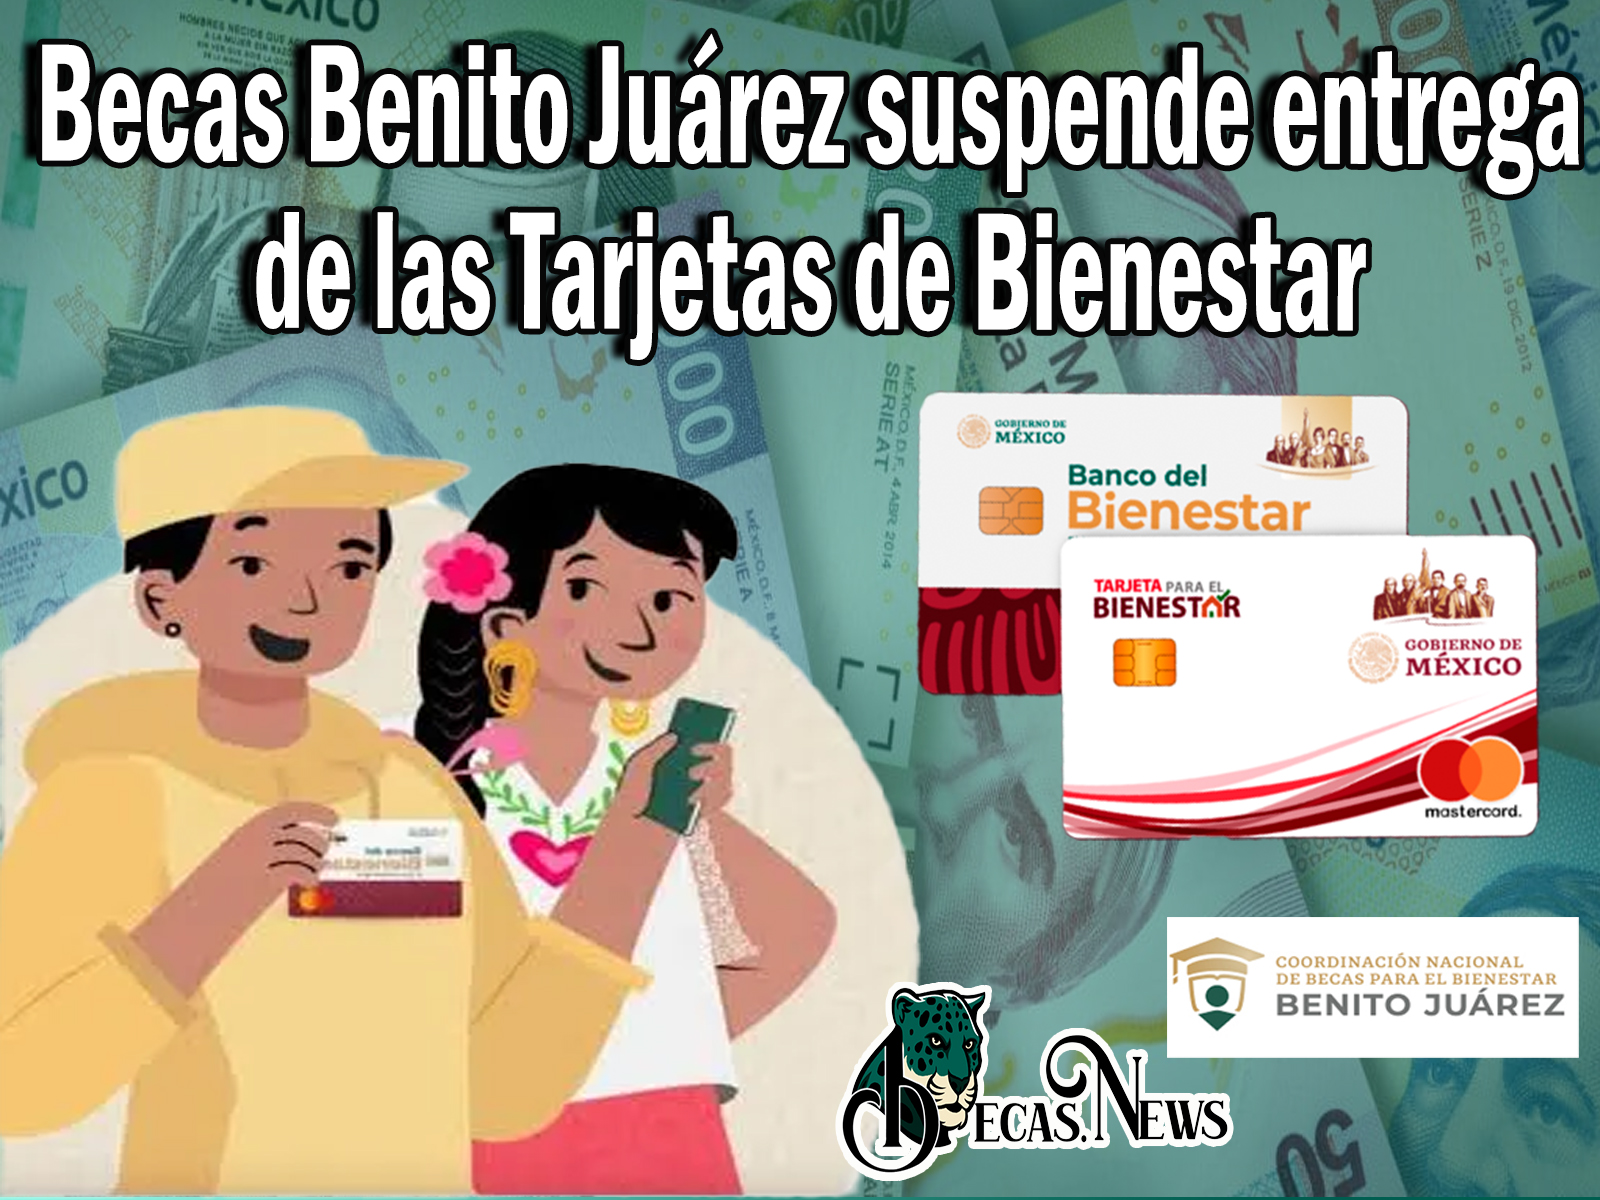 Becas Benito Juárez suspende entrega de las Tarjetas de Bienestar 